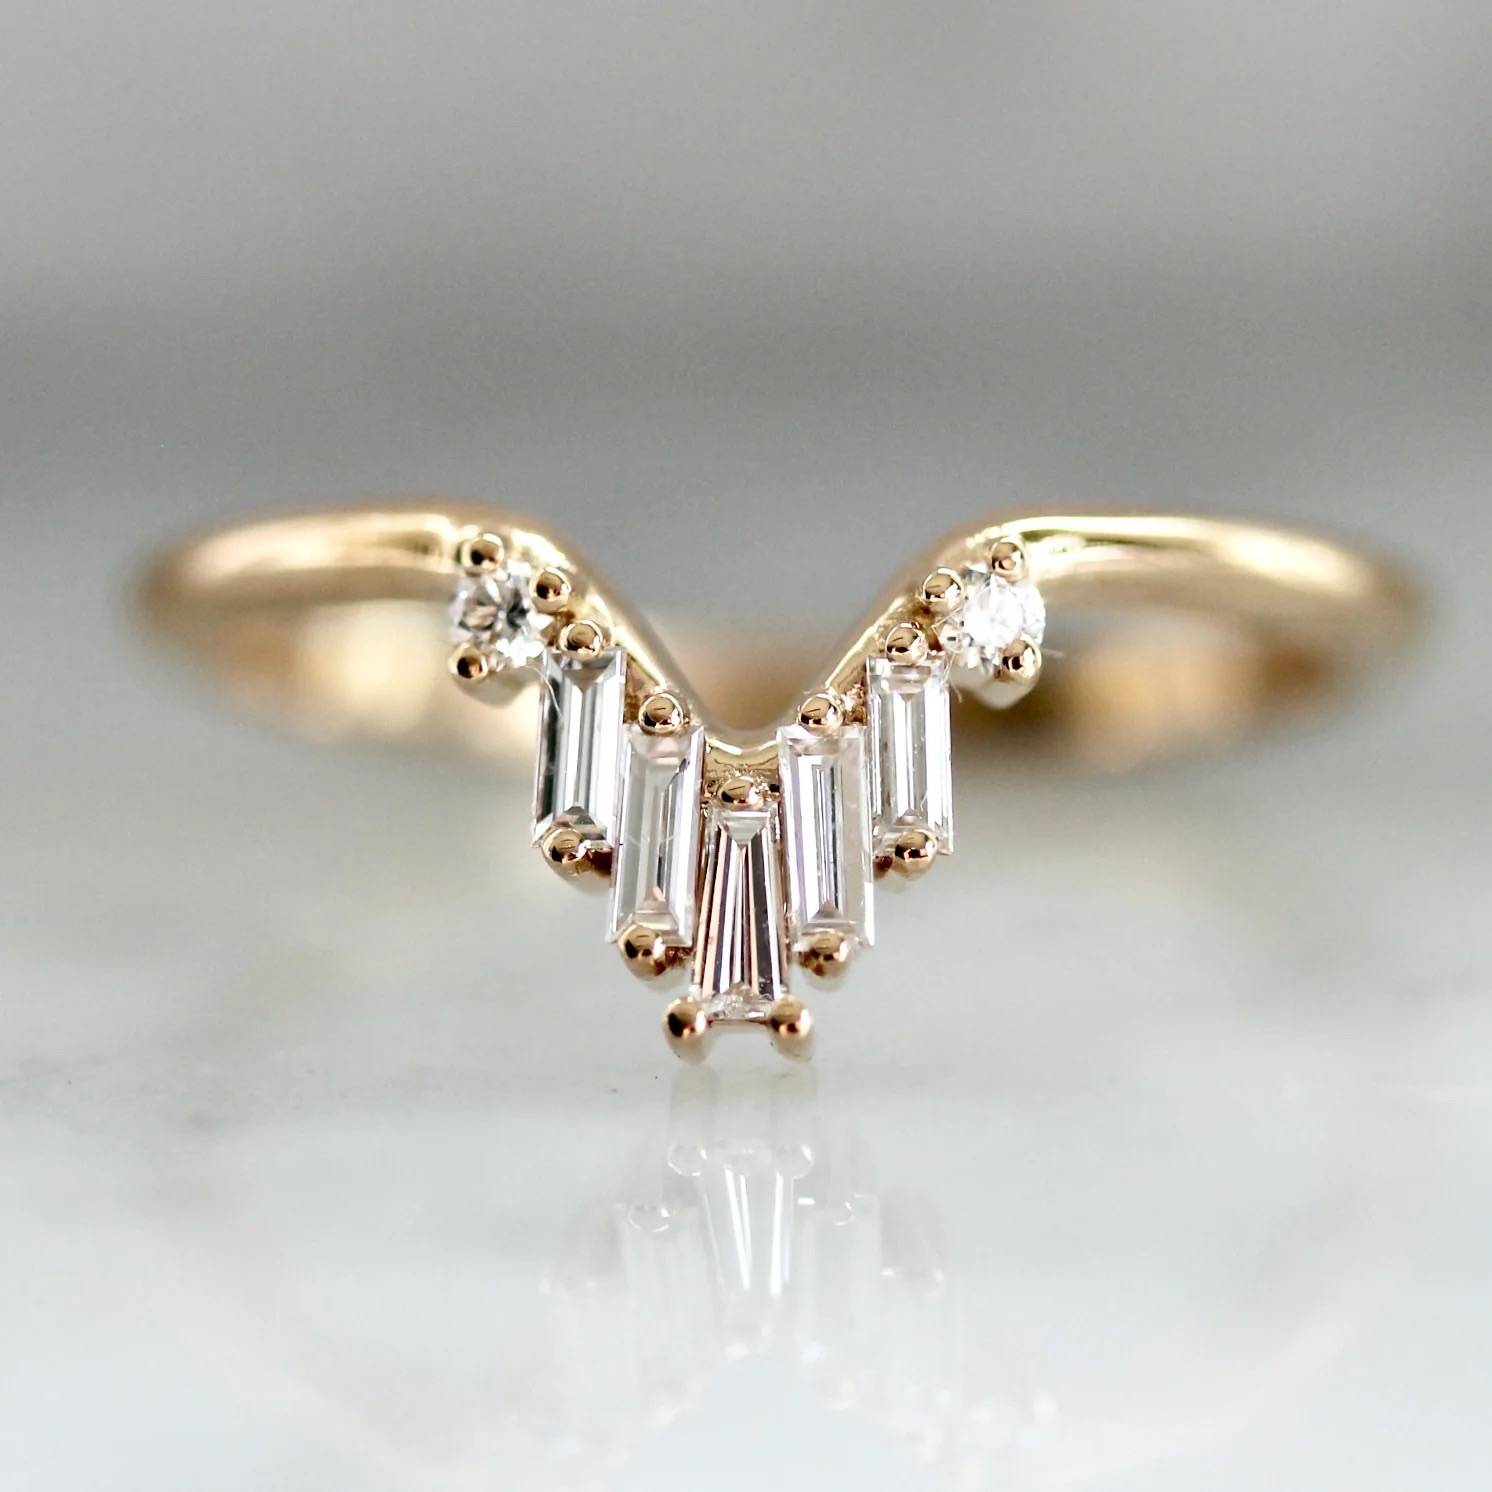 30 Irresistibly Unique Wedding Rings